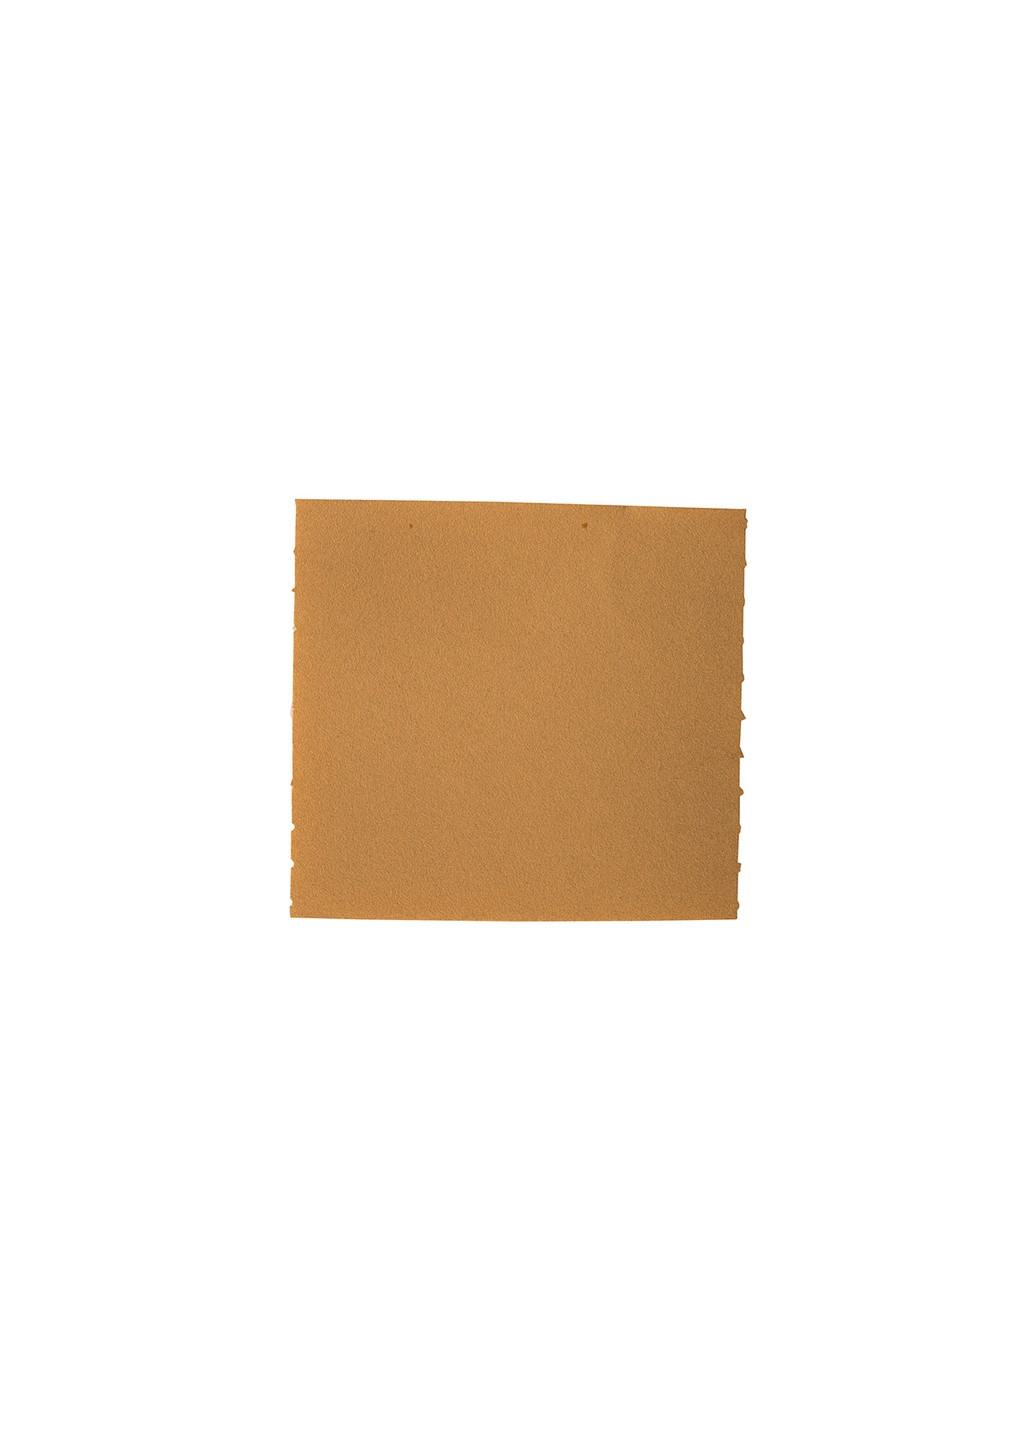 Шліфлист паперовий SoftFlex (115х125 мм, P240) наждачний шліфпапір на поролоні (21400) Mirka (286423414)